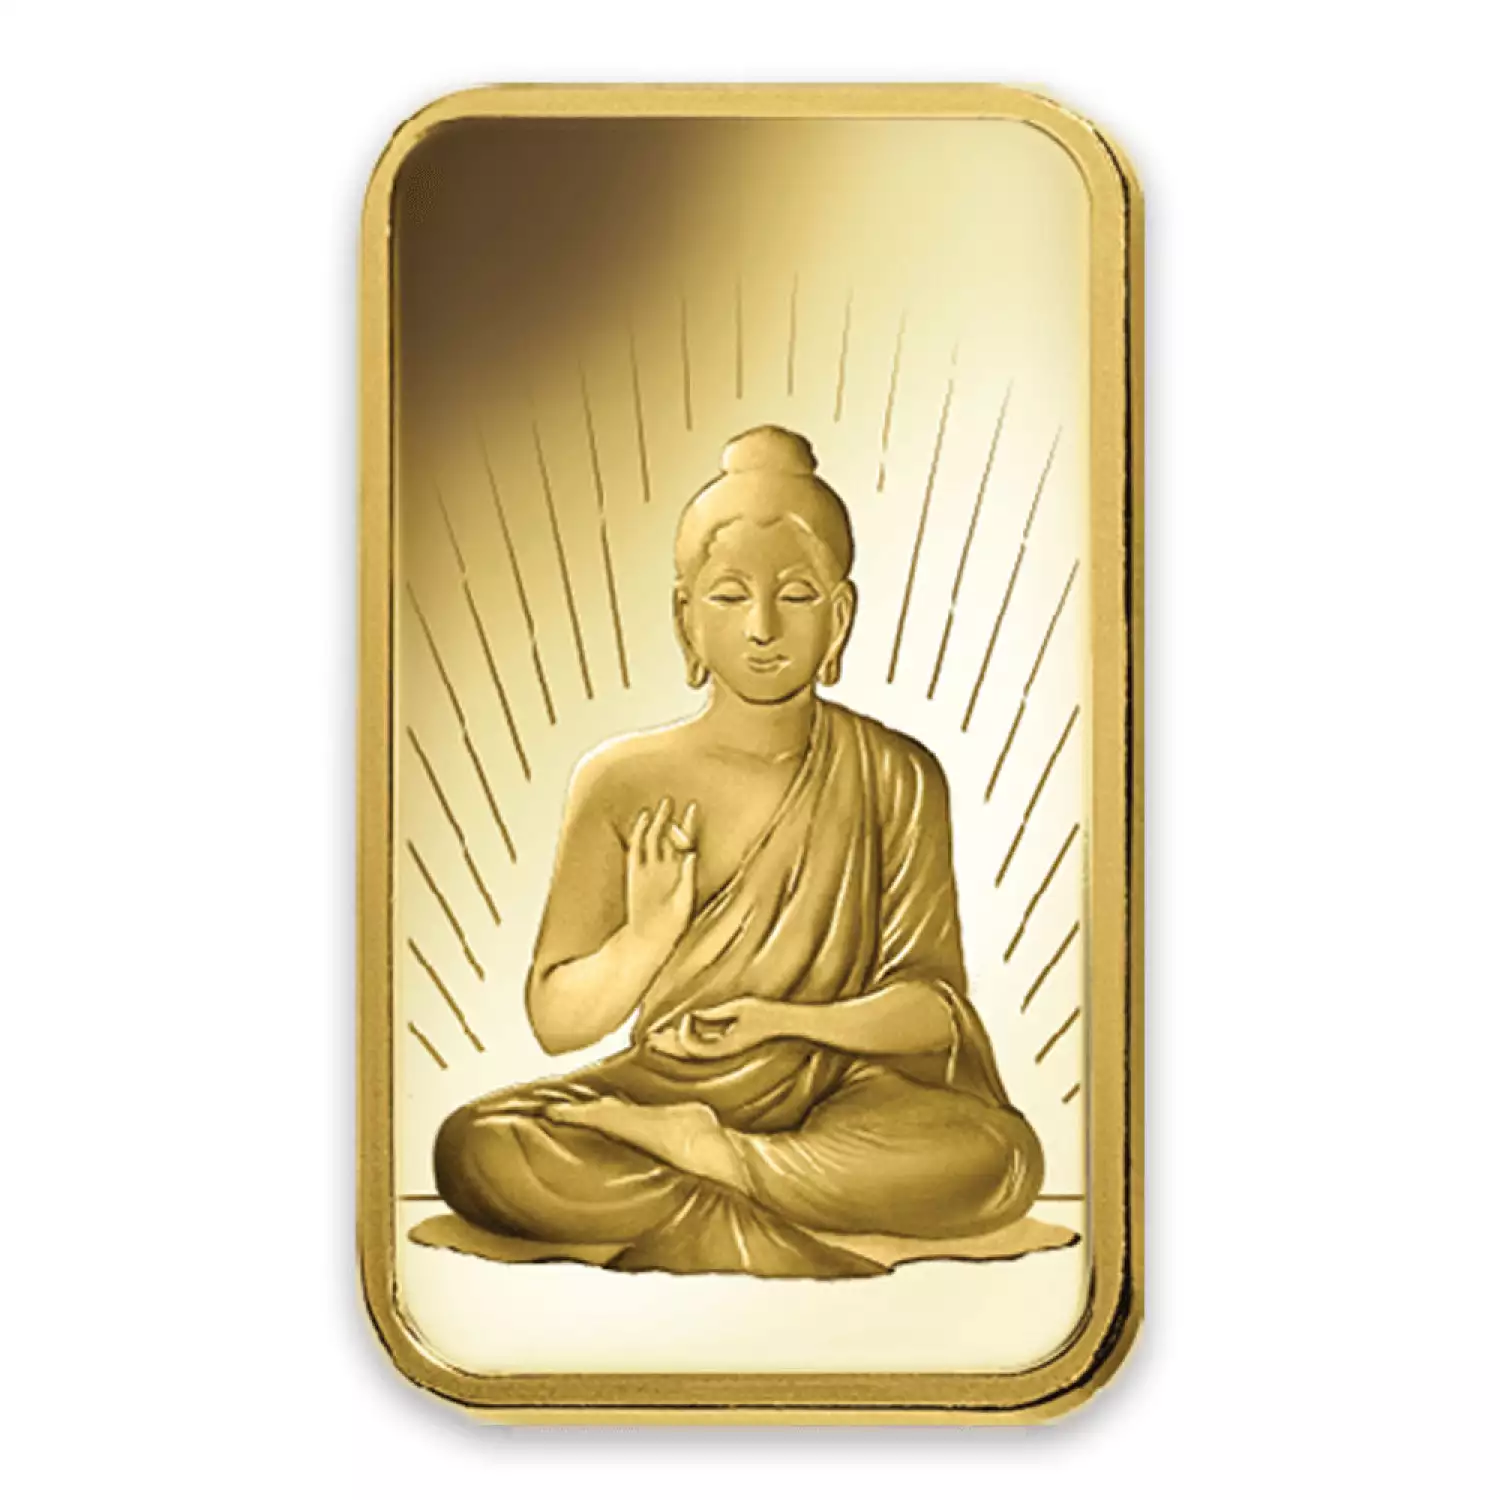 1oz PAMP Gold Bar - Buddha (2)